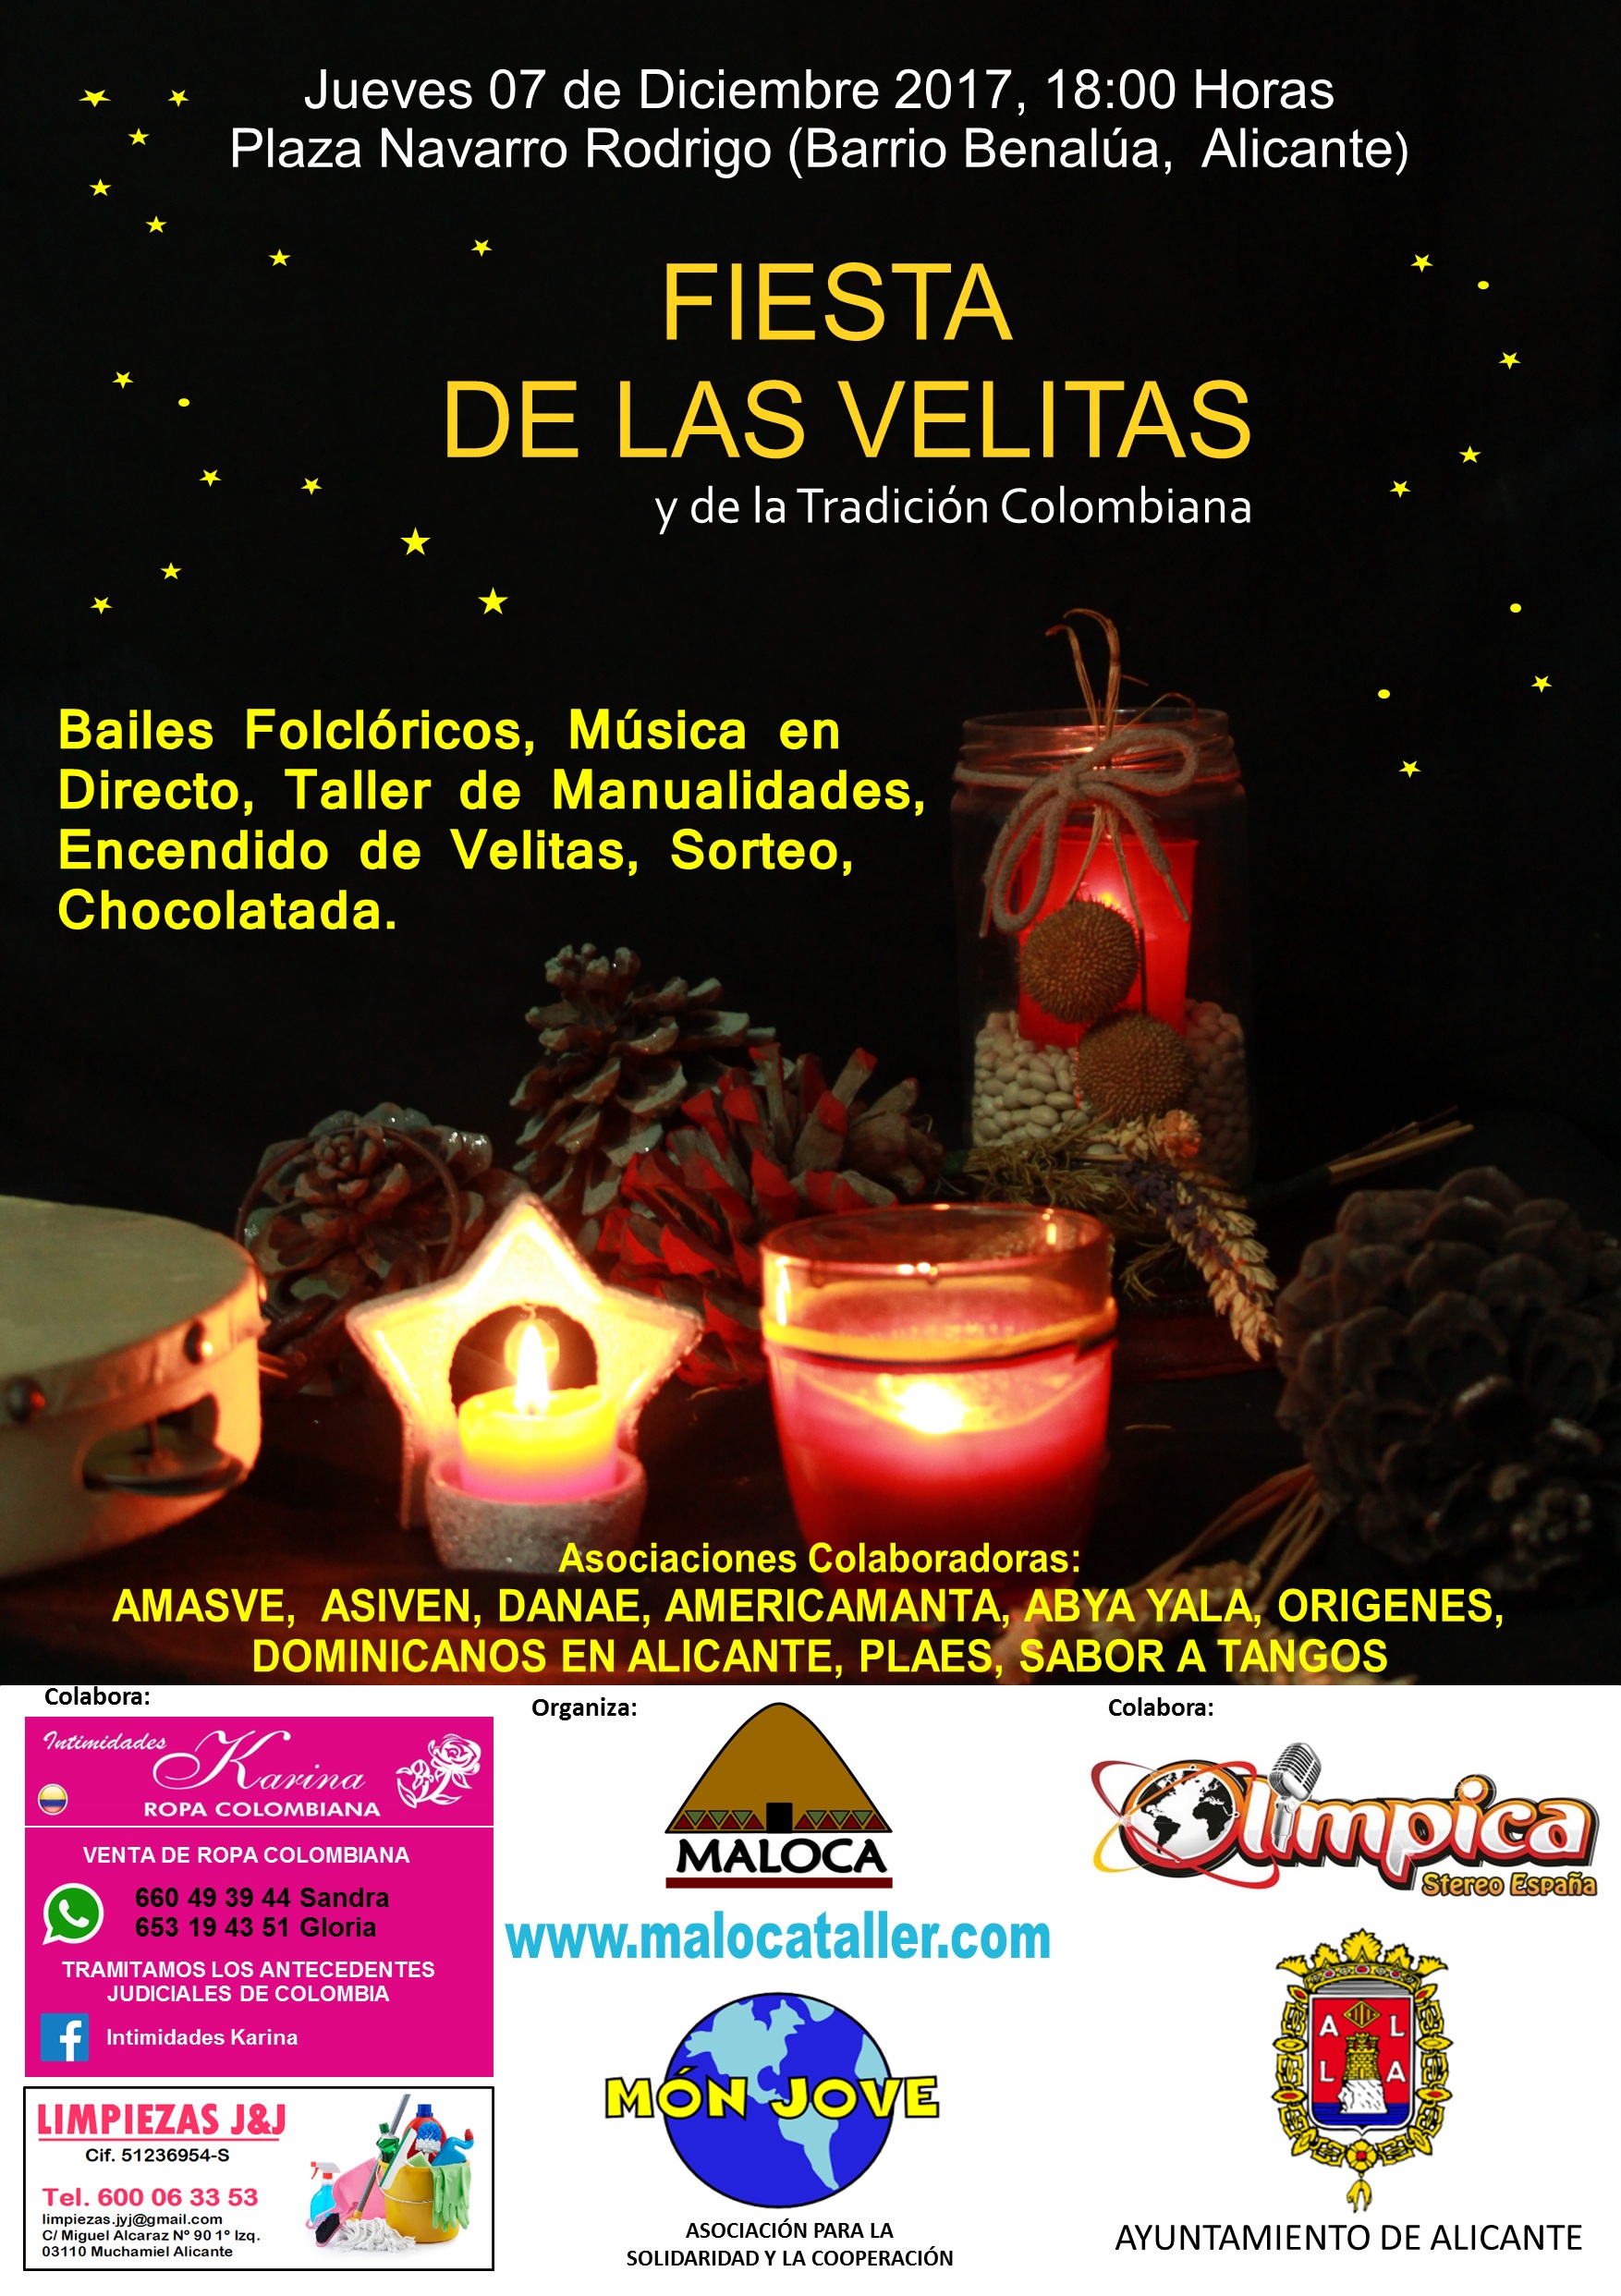 Eslovenia regional jaula fiesta de las velitas y de la tradición Colombiana :: Mon Jove |  Ayuntamiento de Alicante